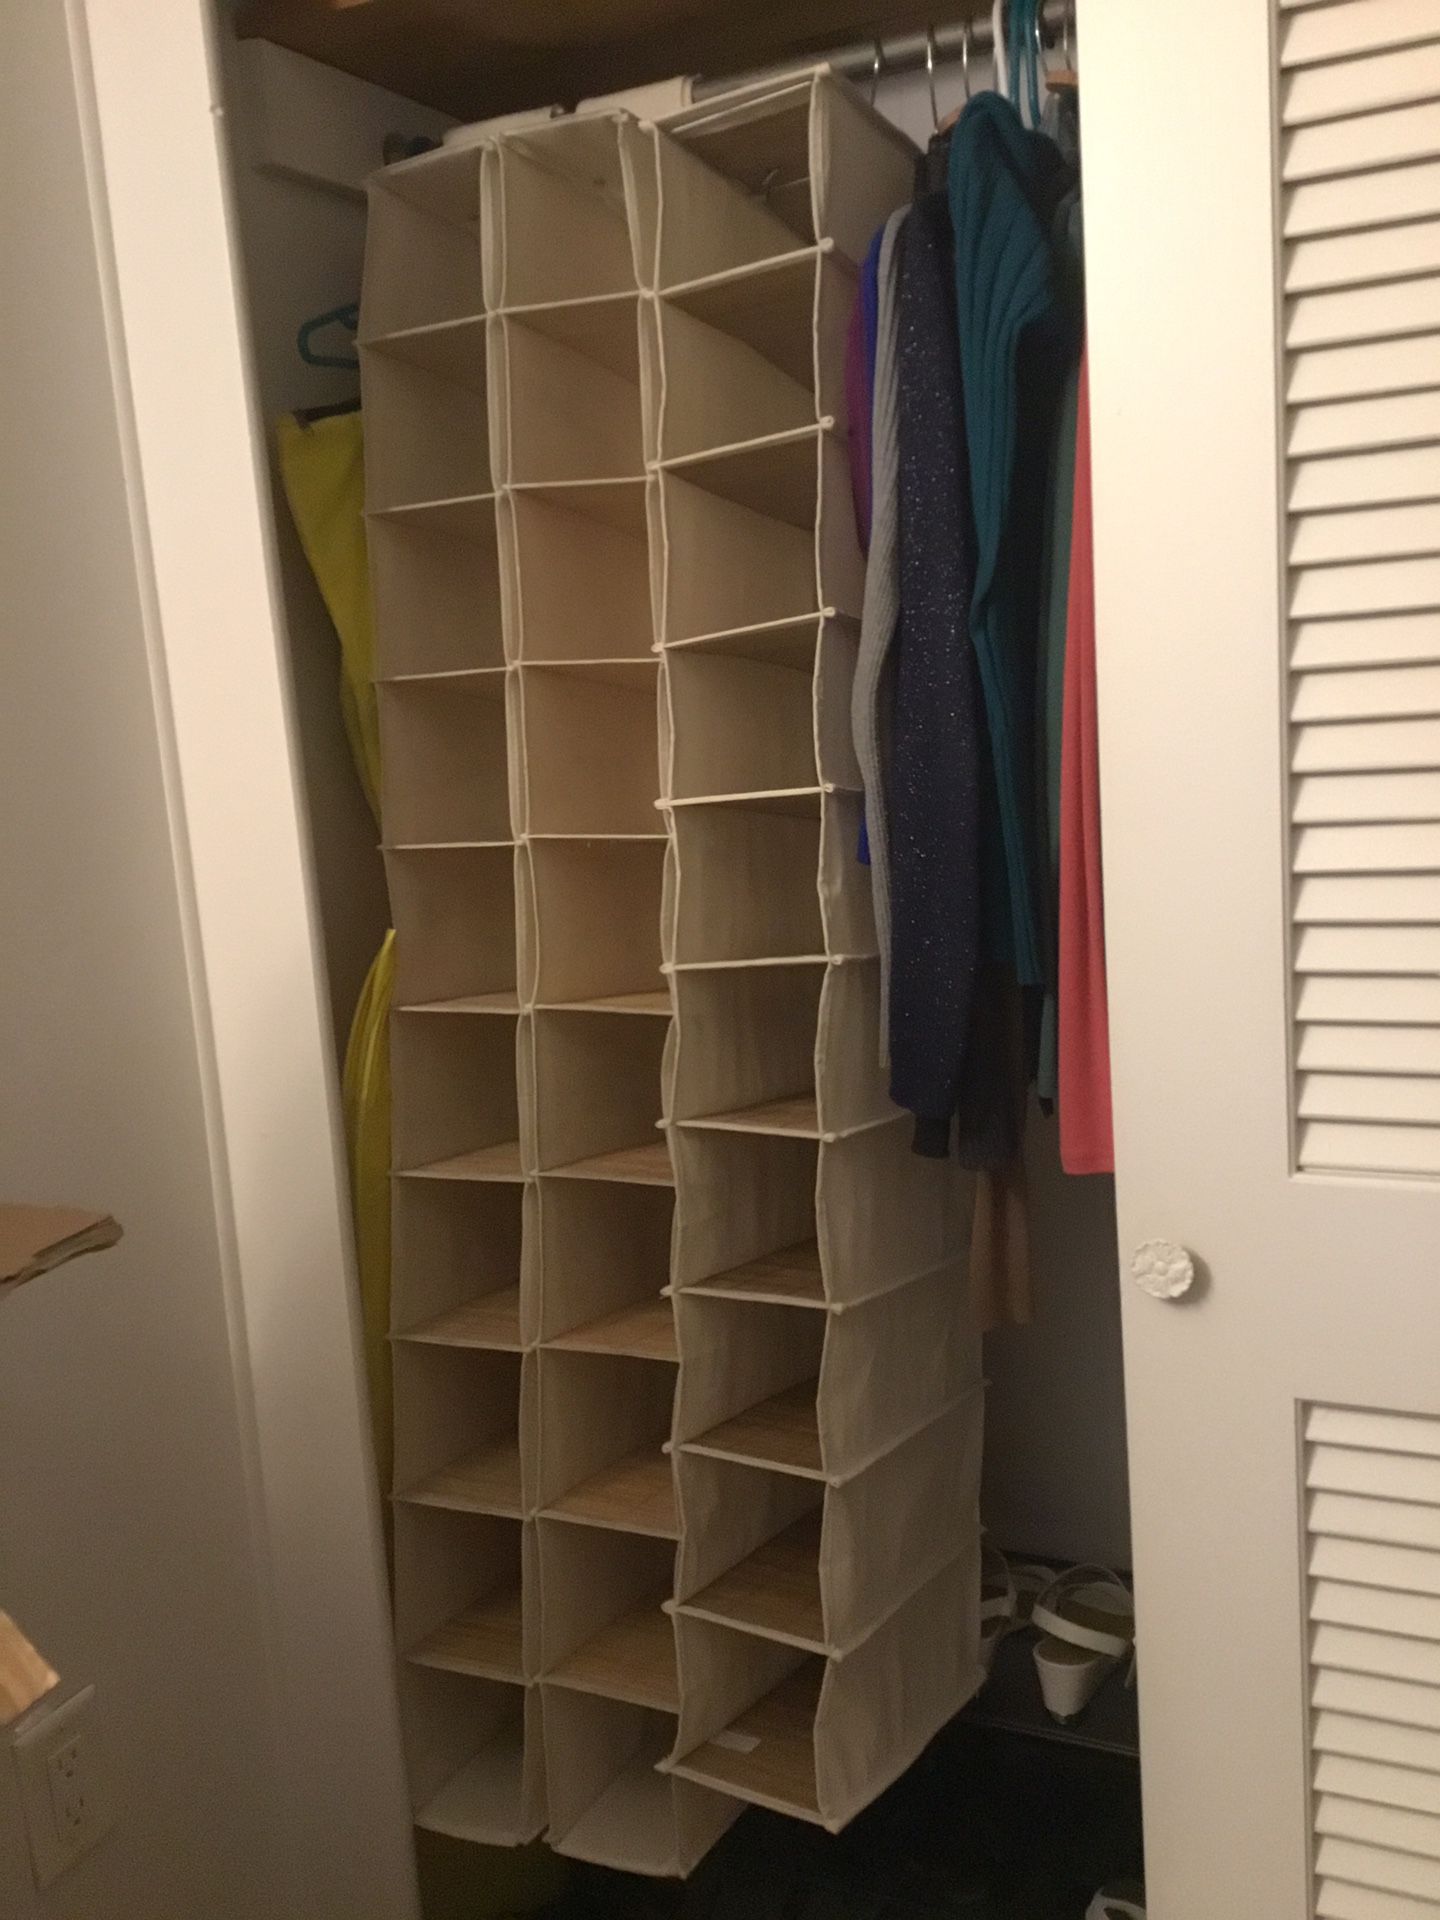 Shoe closet organizer hanging storage, bamboo -3 total